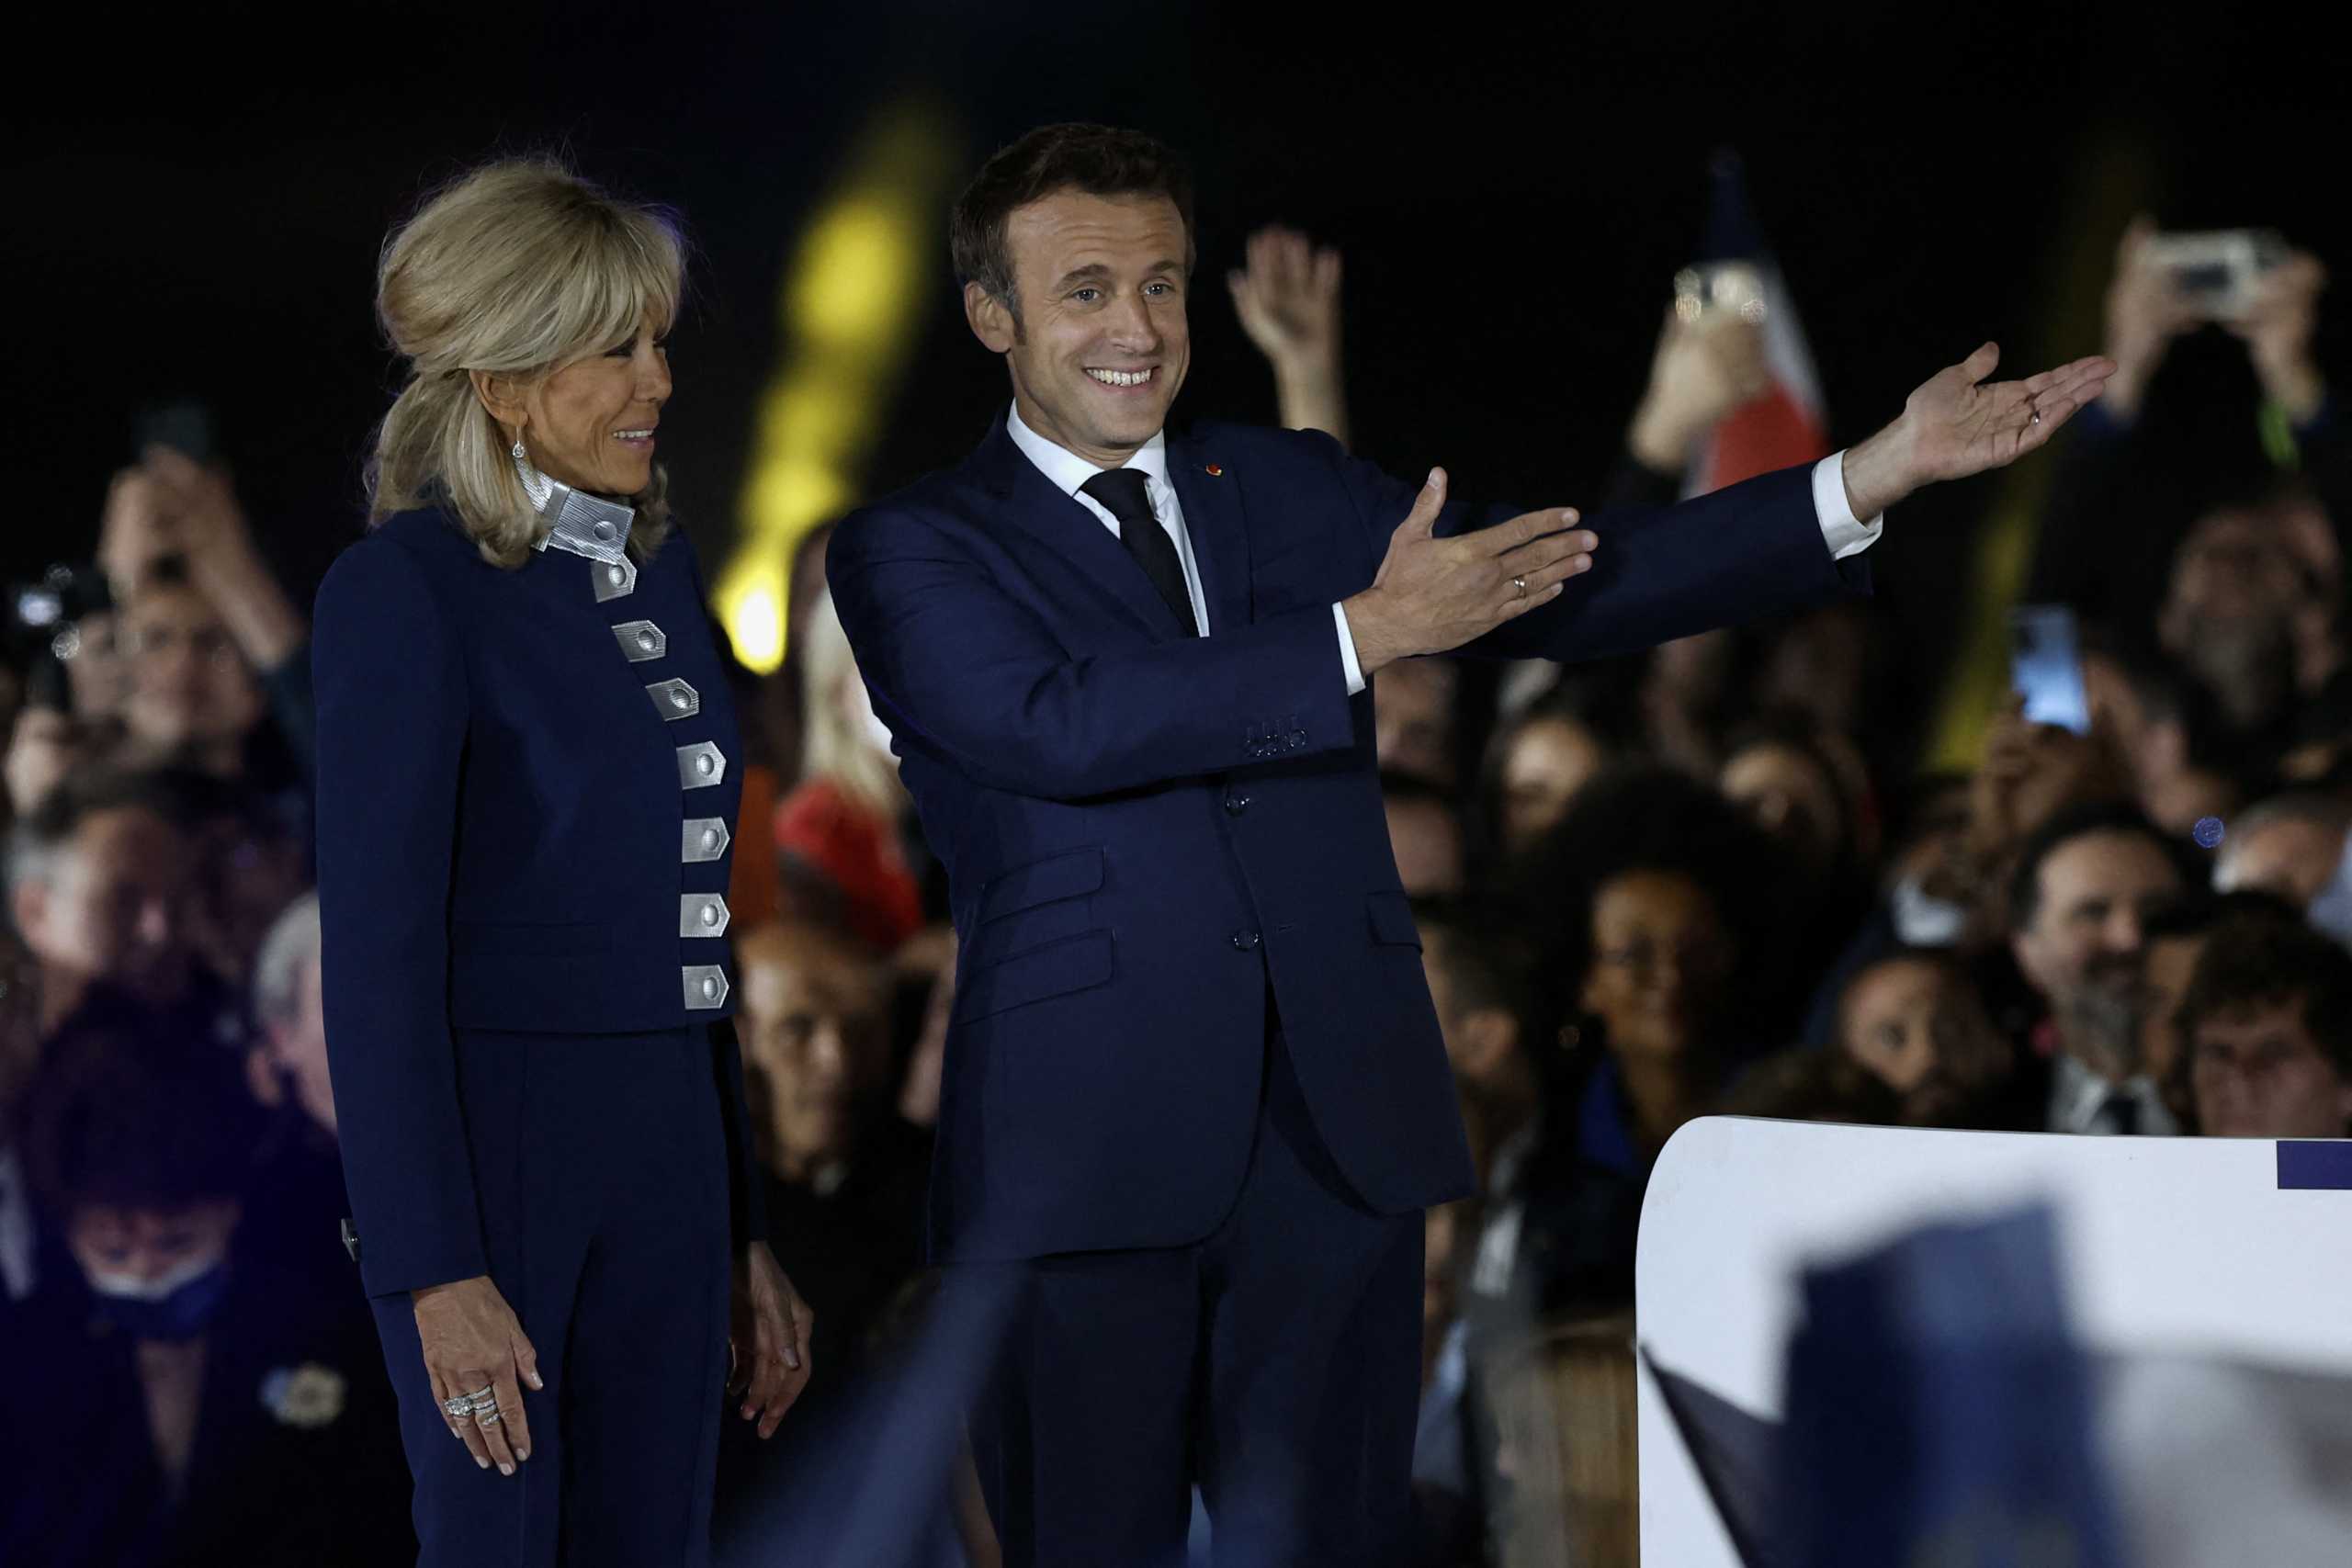 Γαλλικές εκλογές: Ο Μακρόν καλείται να ενώσει δυο Γαλλίες, γράφει ο γαλλικός Τύπος